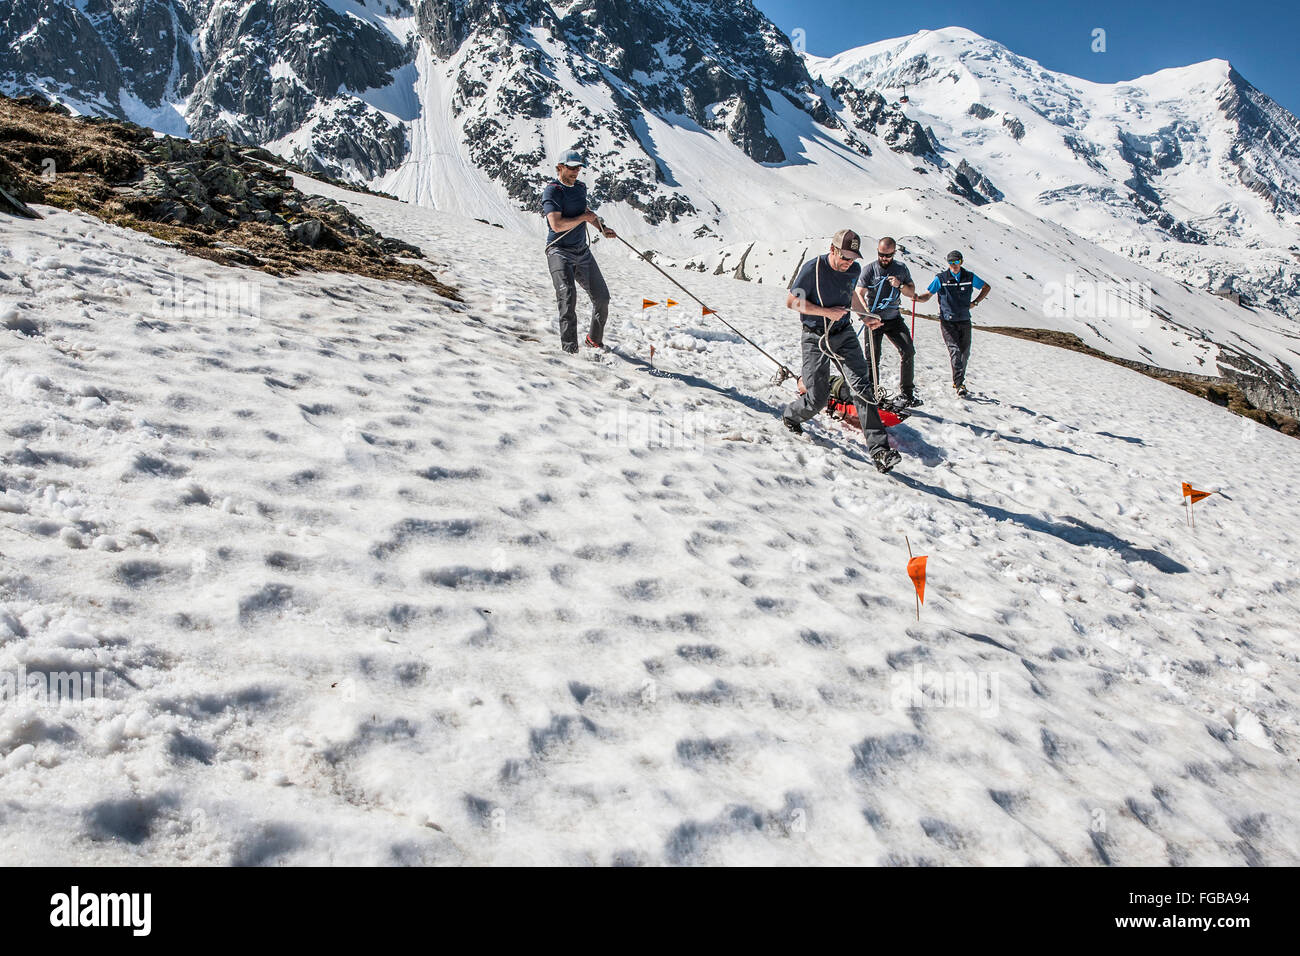 La formation de personnes pour une évacuation d'urgence en traîneau dans les alpes françaises Banque D'Images